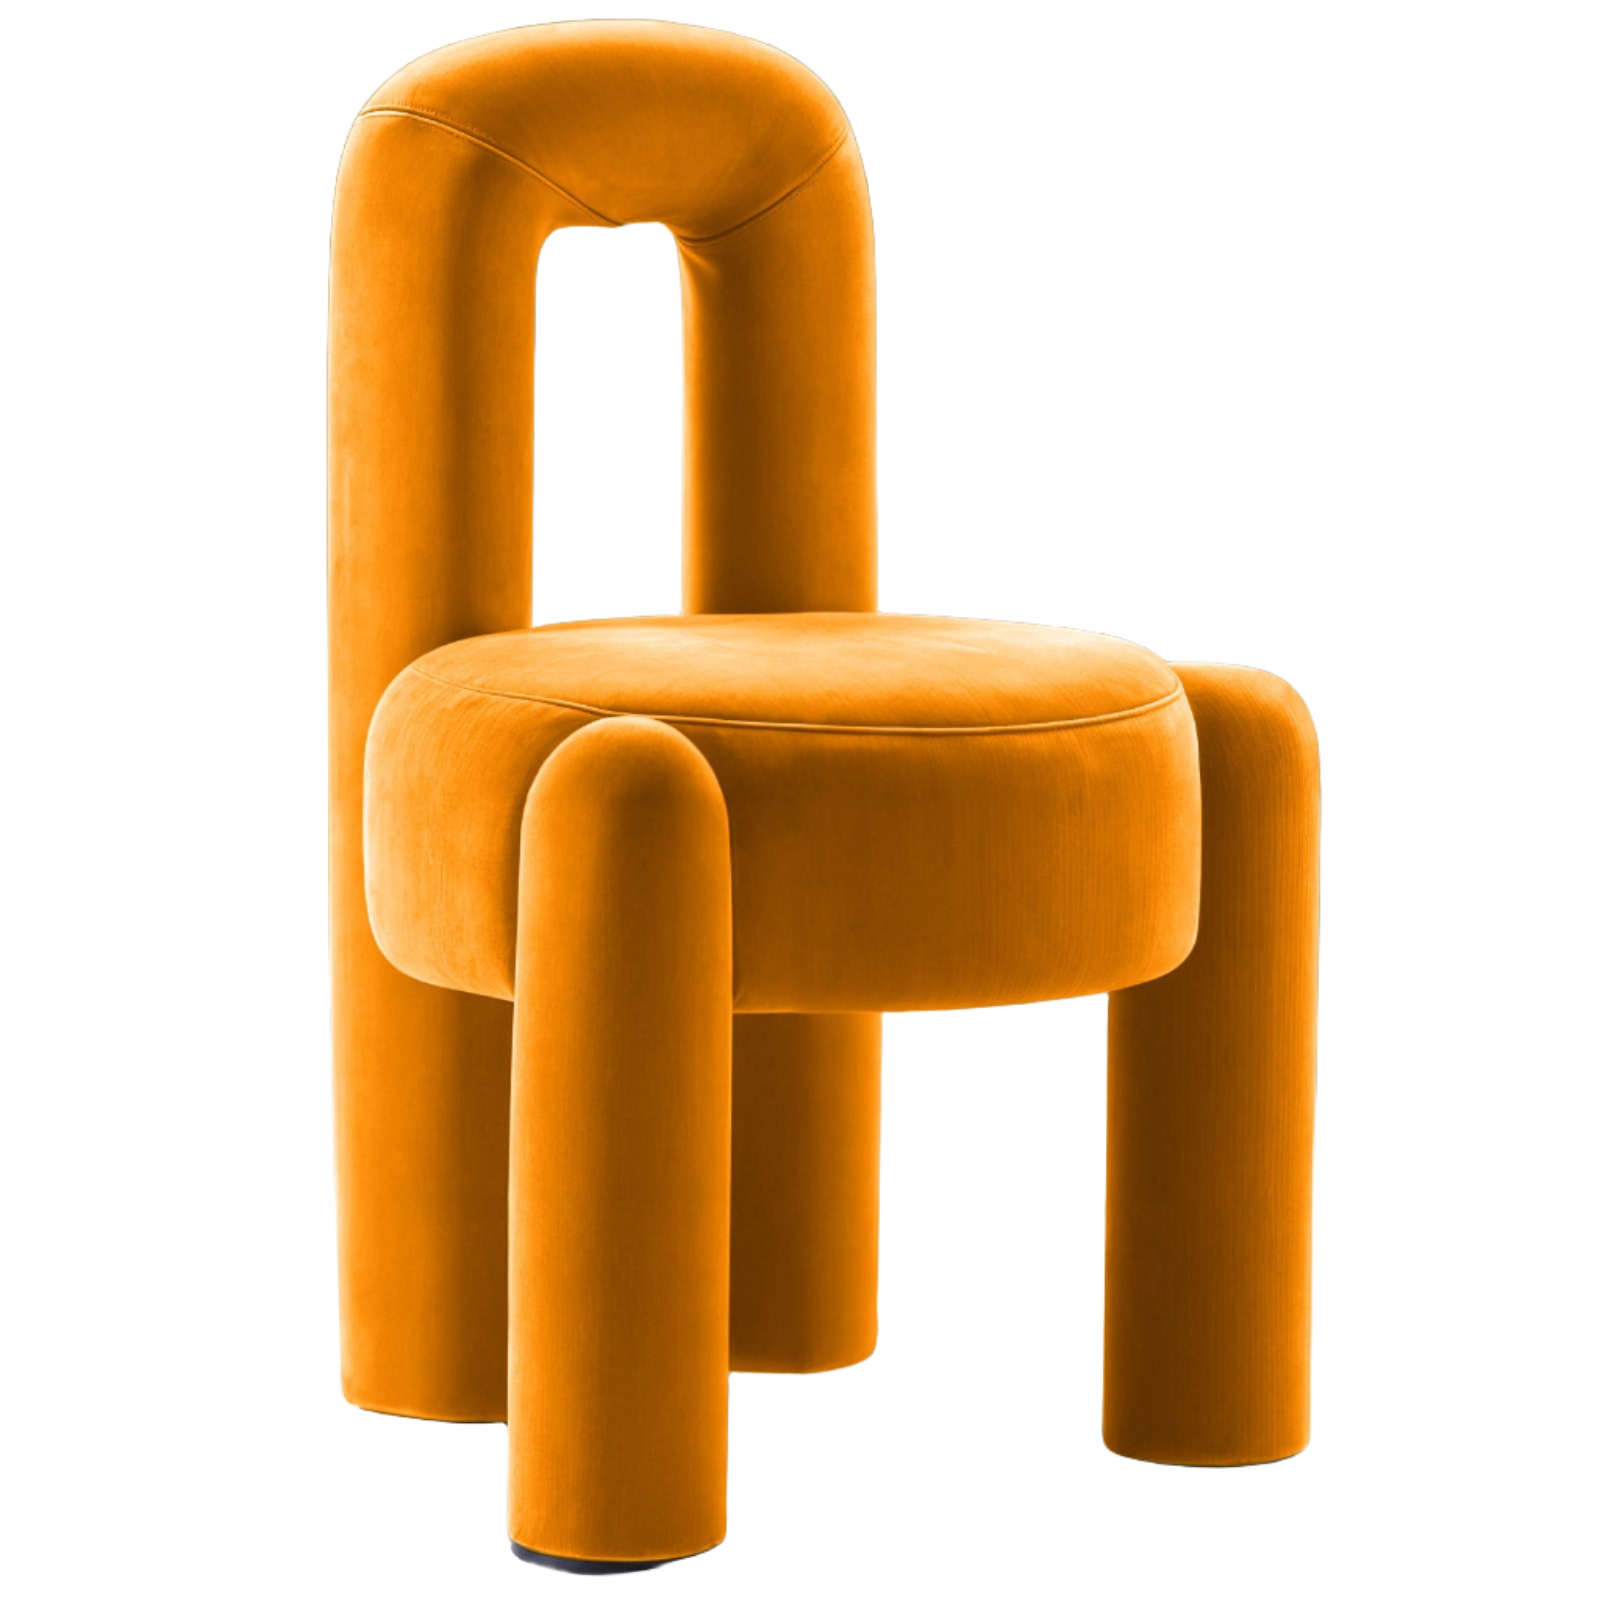 The Marian Chair Orange